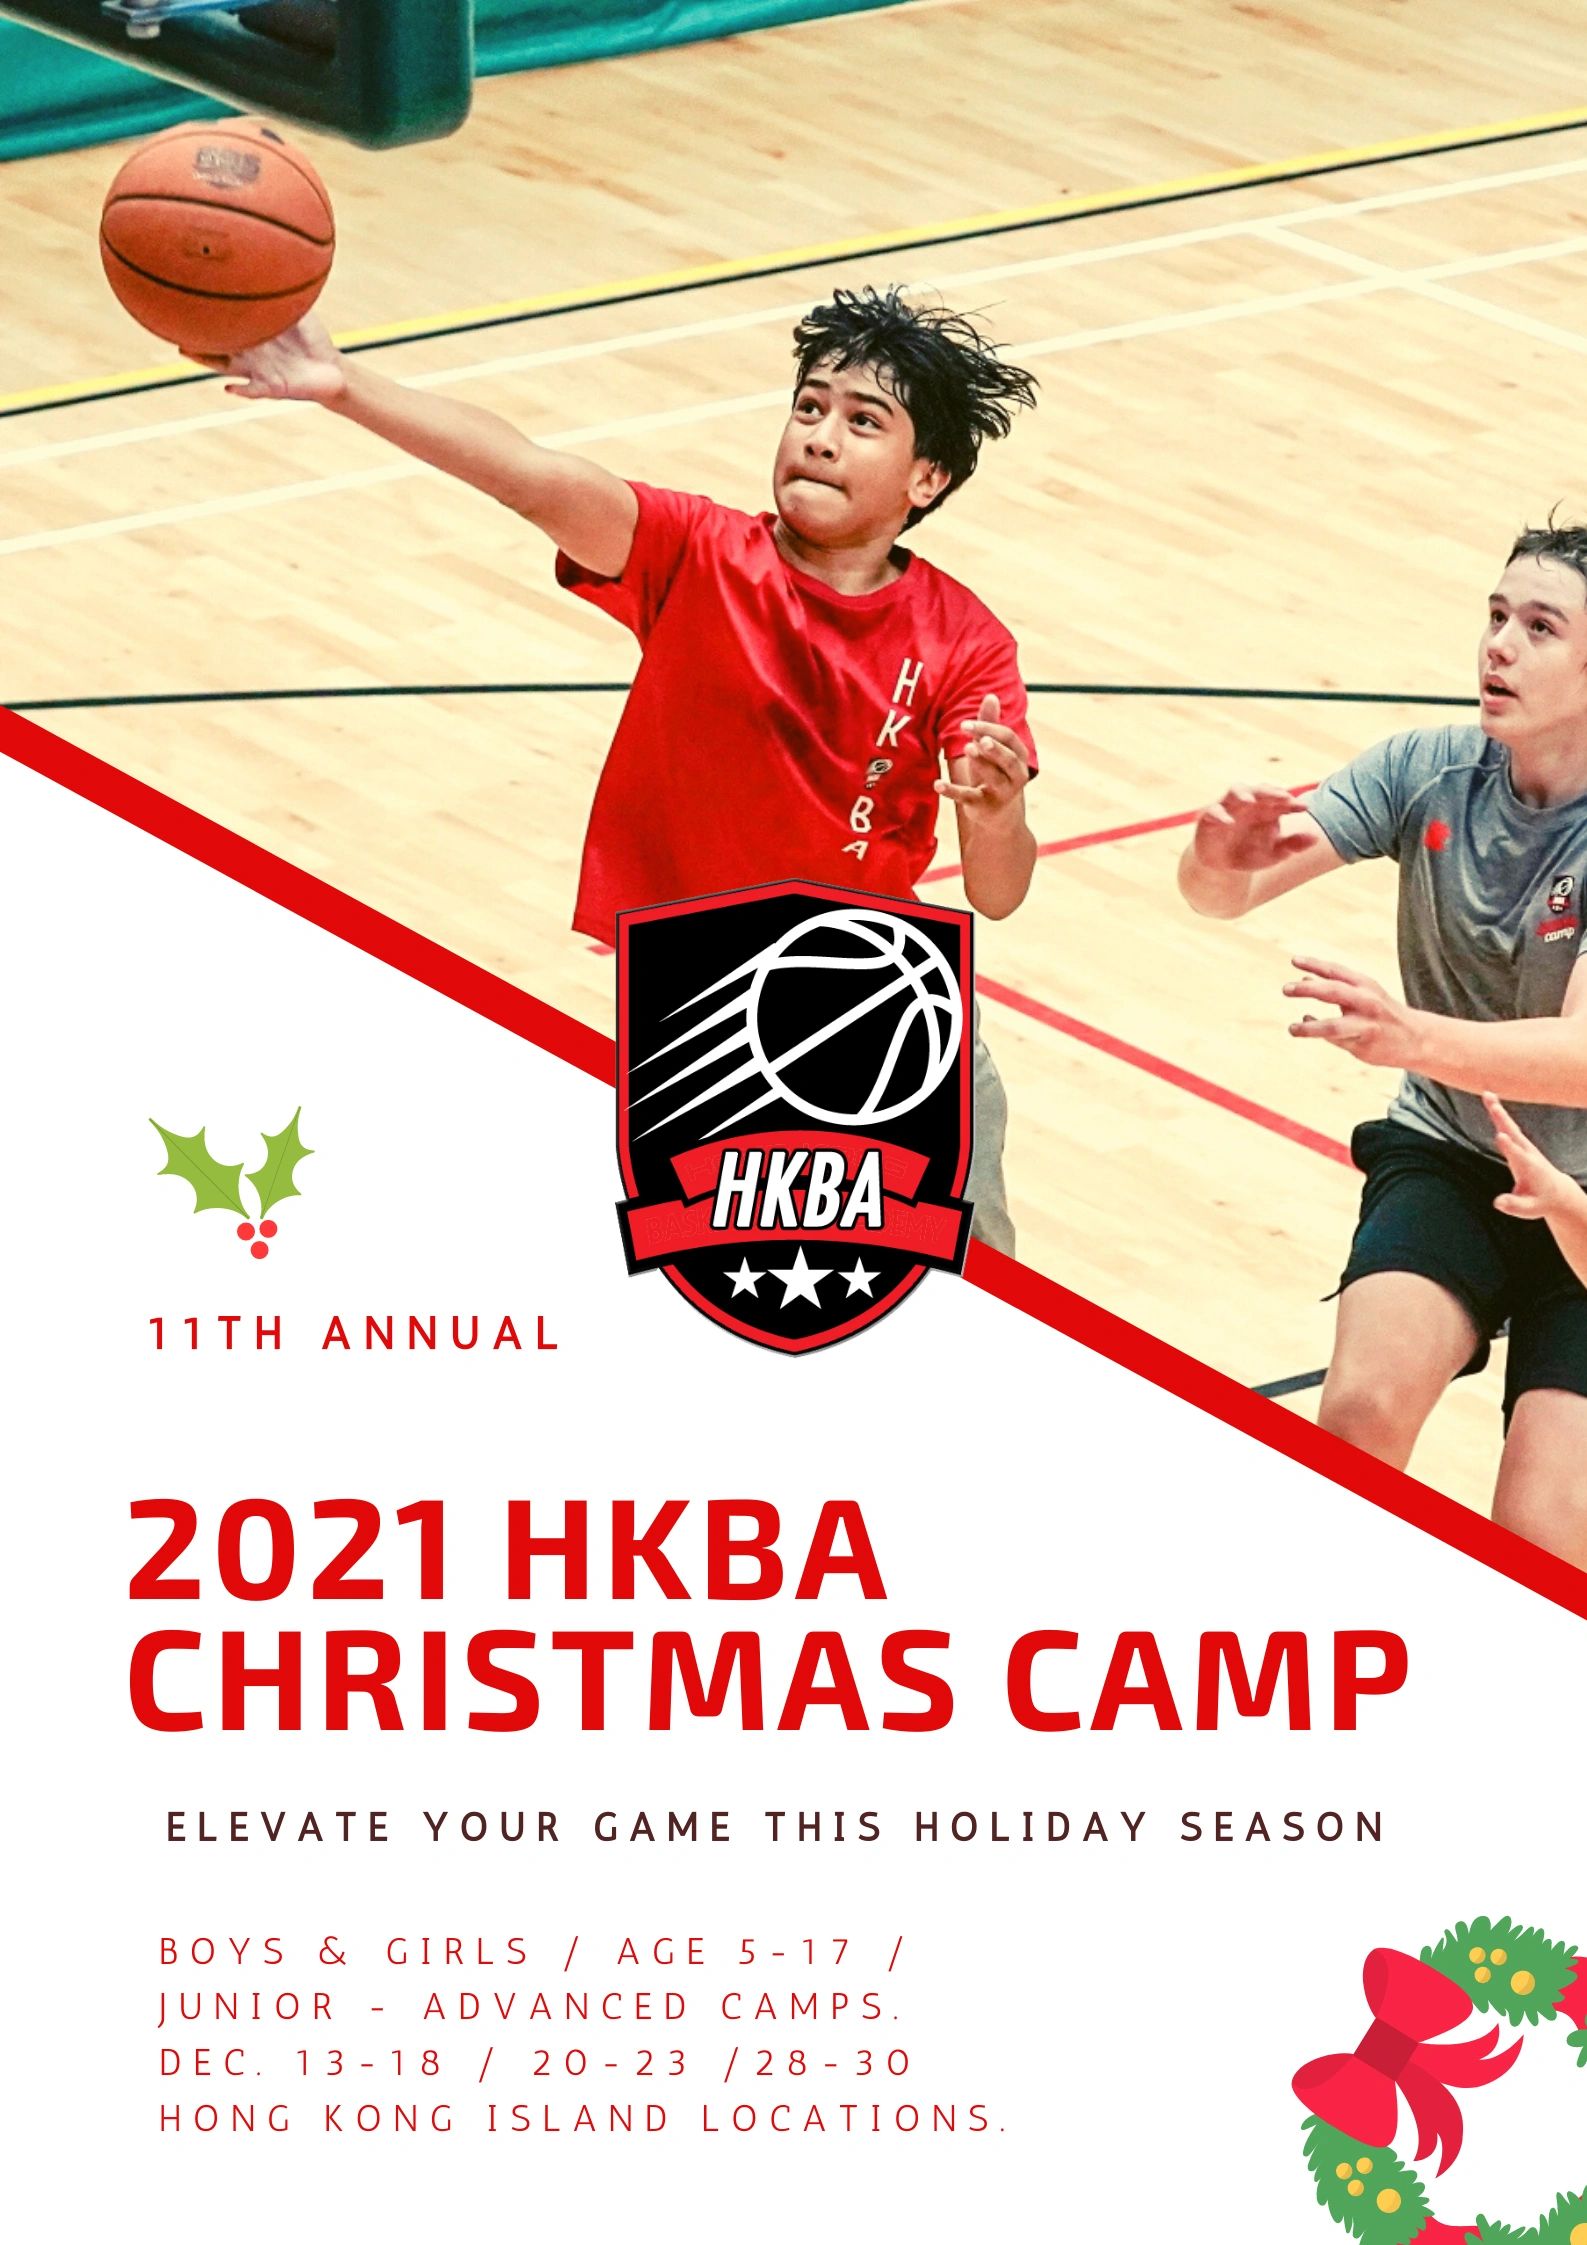 HKBA Basketball - Hong Kong